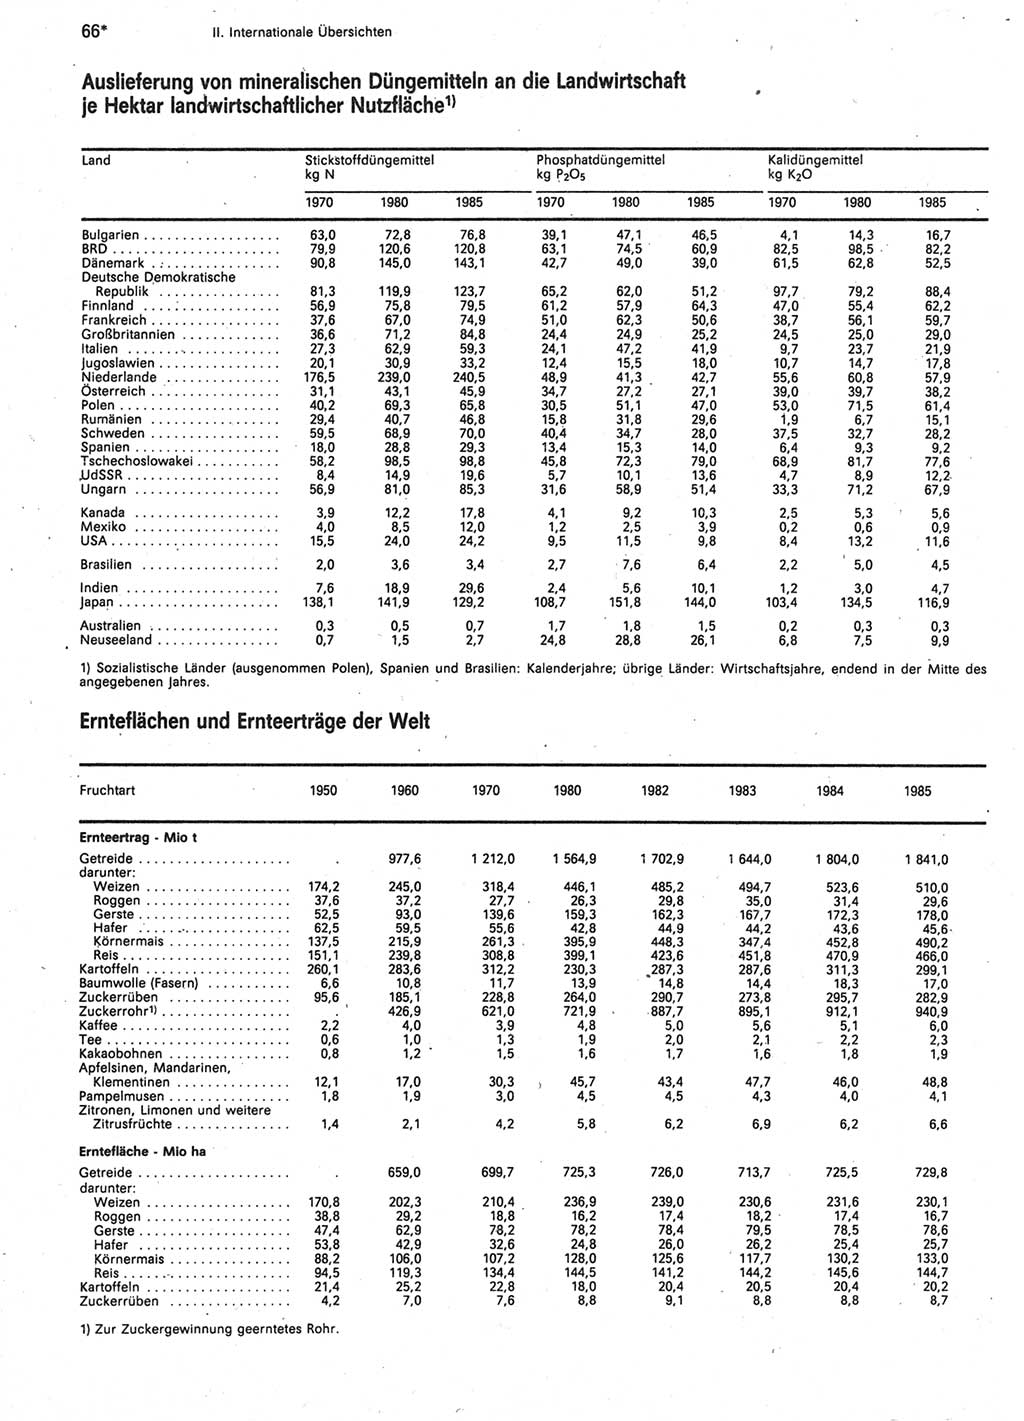 Statistisches Jahrbuch der Deutschen Demokratischen Republik (DDR) 1987, Seite 66 (Stat. Jb. DDR 1987, S. 66)